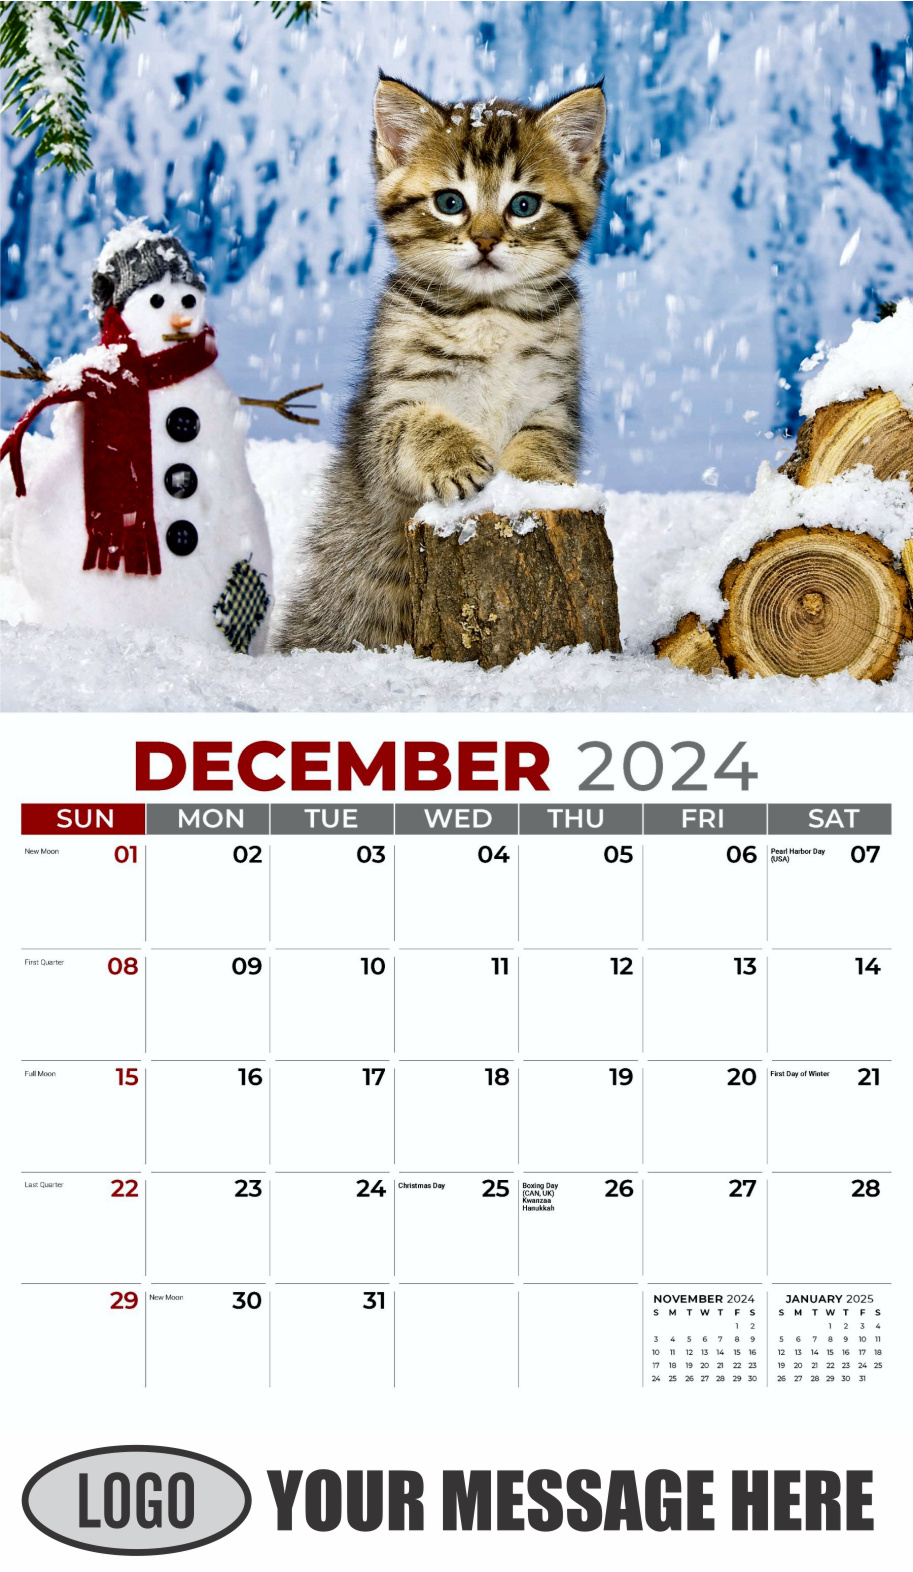 Kittens 2024 Business Promo Wall Calendar - December